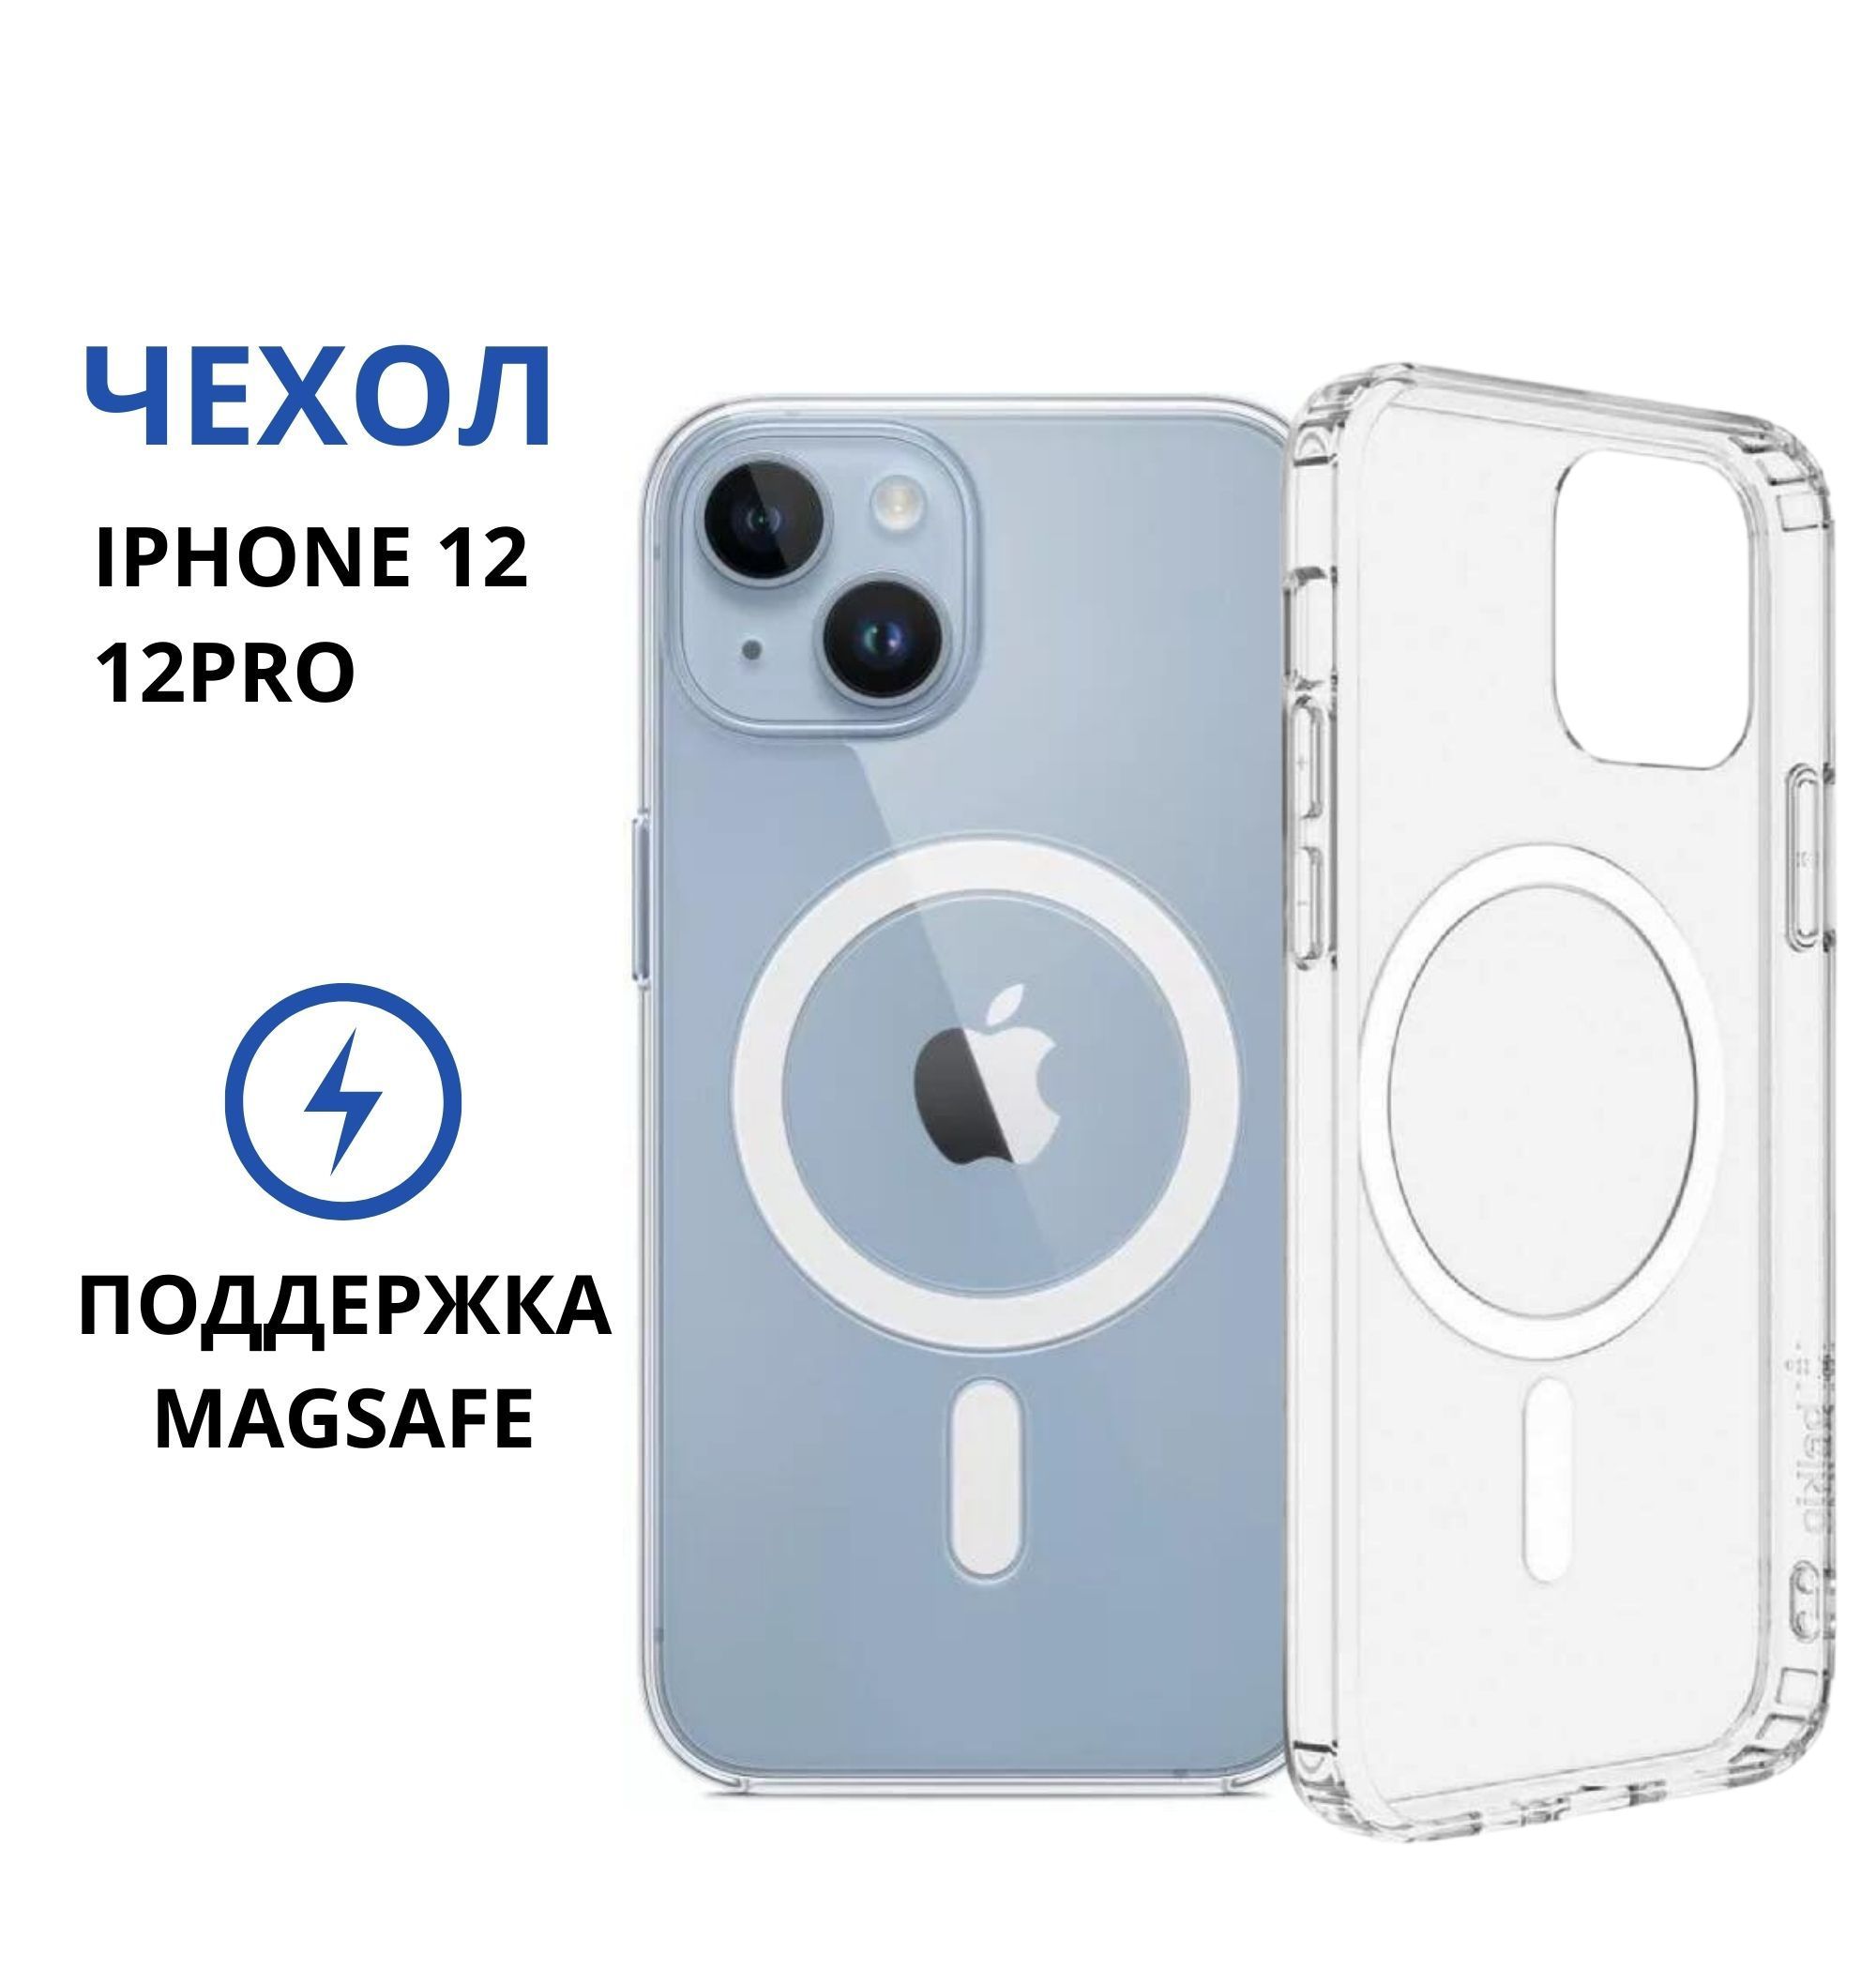 Магнитныйчехолнаайфон12и12проmagsafe,прозрачныйчехолнаiphone12и12просподдержкоймагсейф